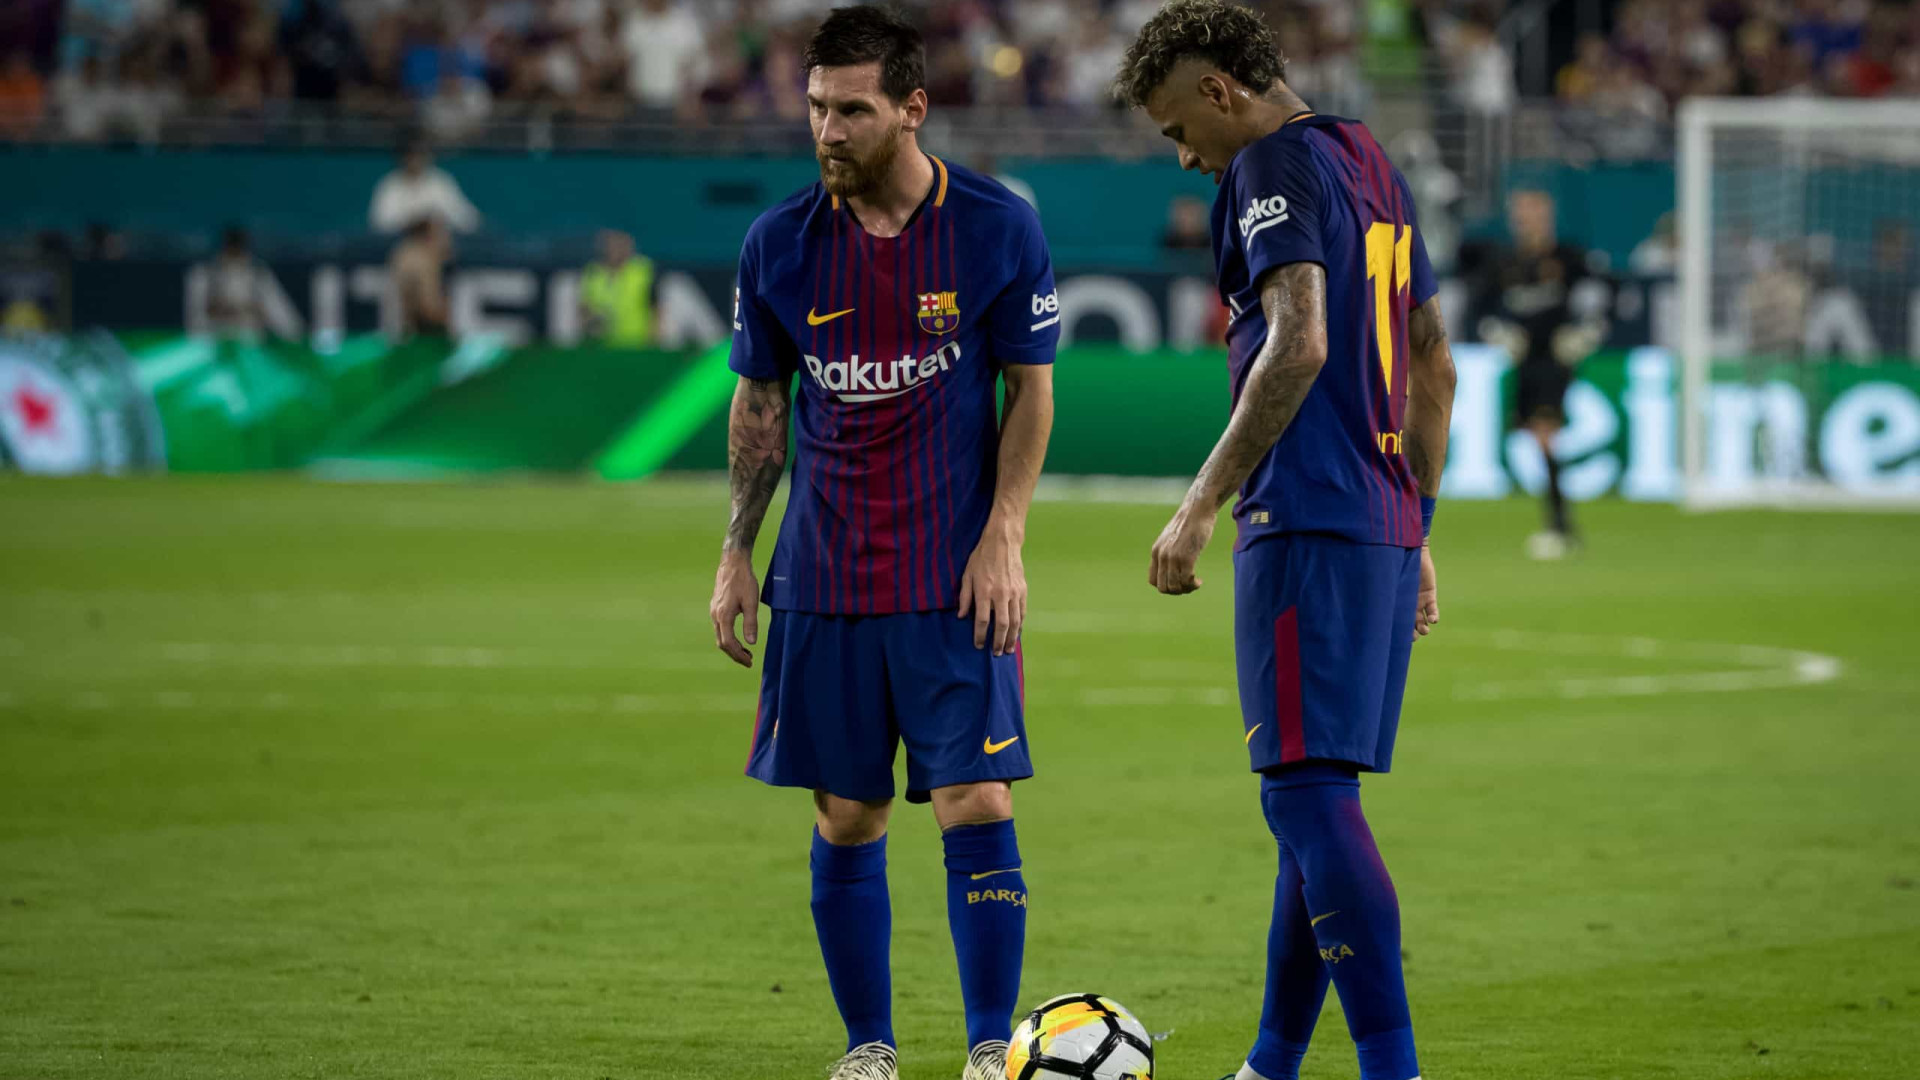 'Felizes por estarmos juntos', diz Messi sobre relação com Neymar no PSG